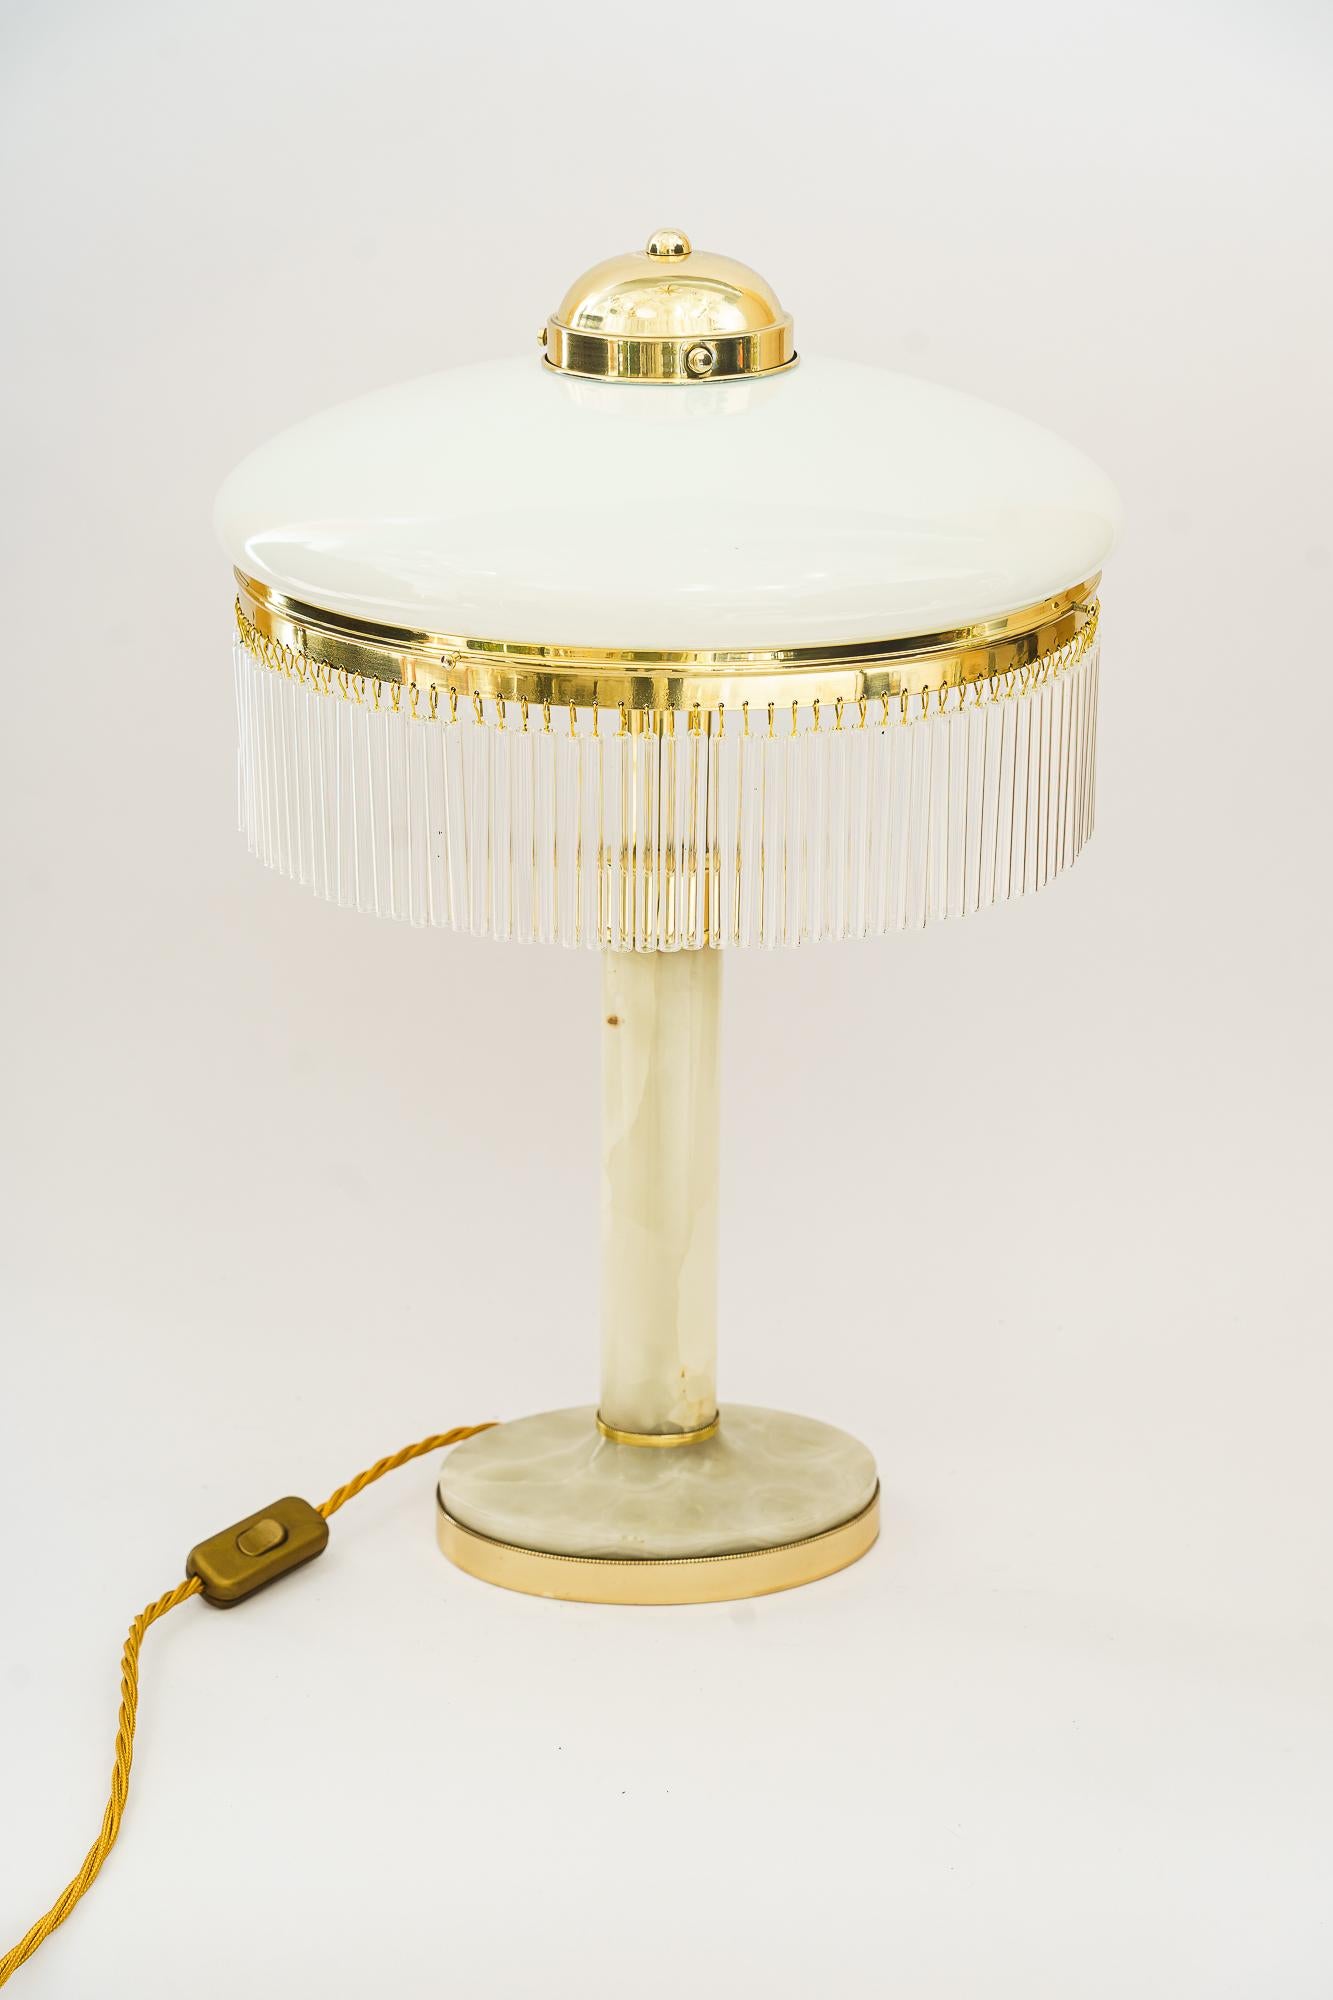 Art Deco Tischlampe aus Messing und Marmor mit Opalglasschirm und Glasstäben 1920er Jahre
Messing poliert und emailliert
Originaler antiker Opalglas-Schirm
Die Glasstäbe werden ersetzt ( neu )